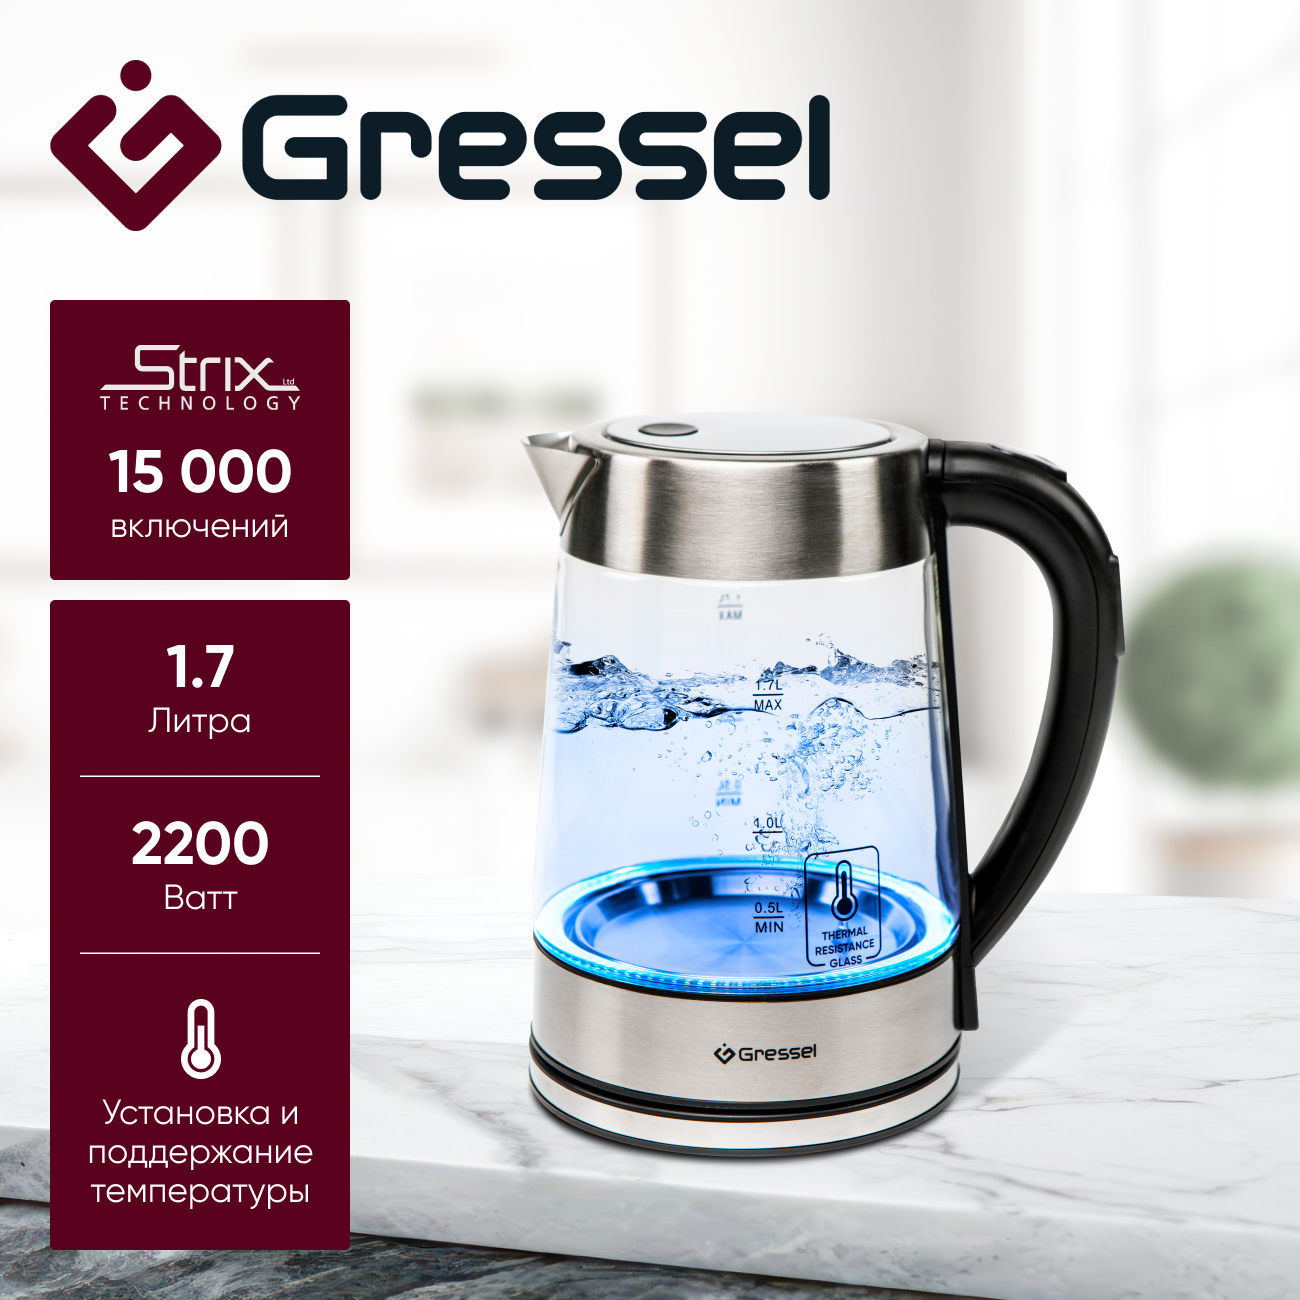 Чайник электрический Gressel GRK-1106 с регулировкой температуры, стеклянный с подсветкой